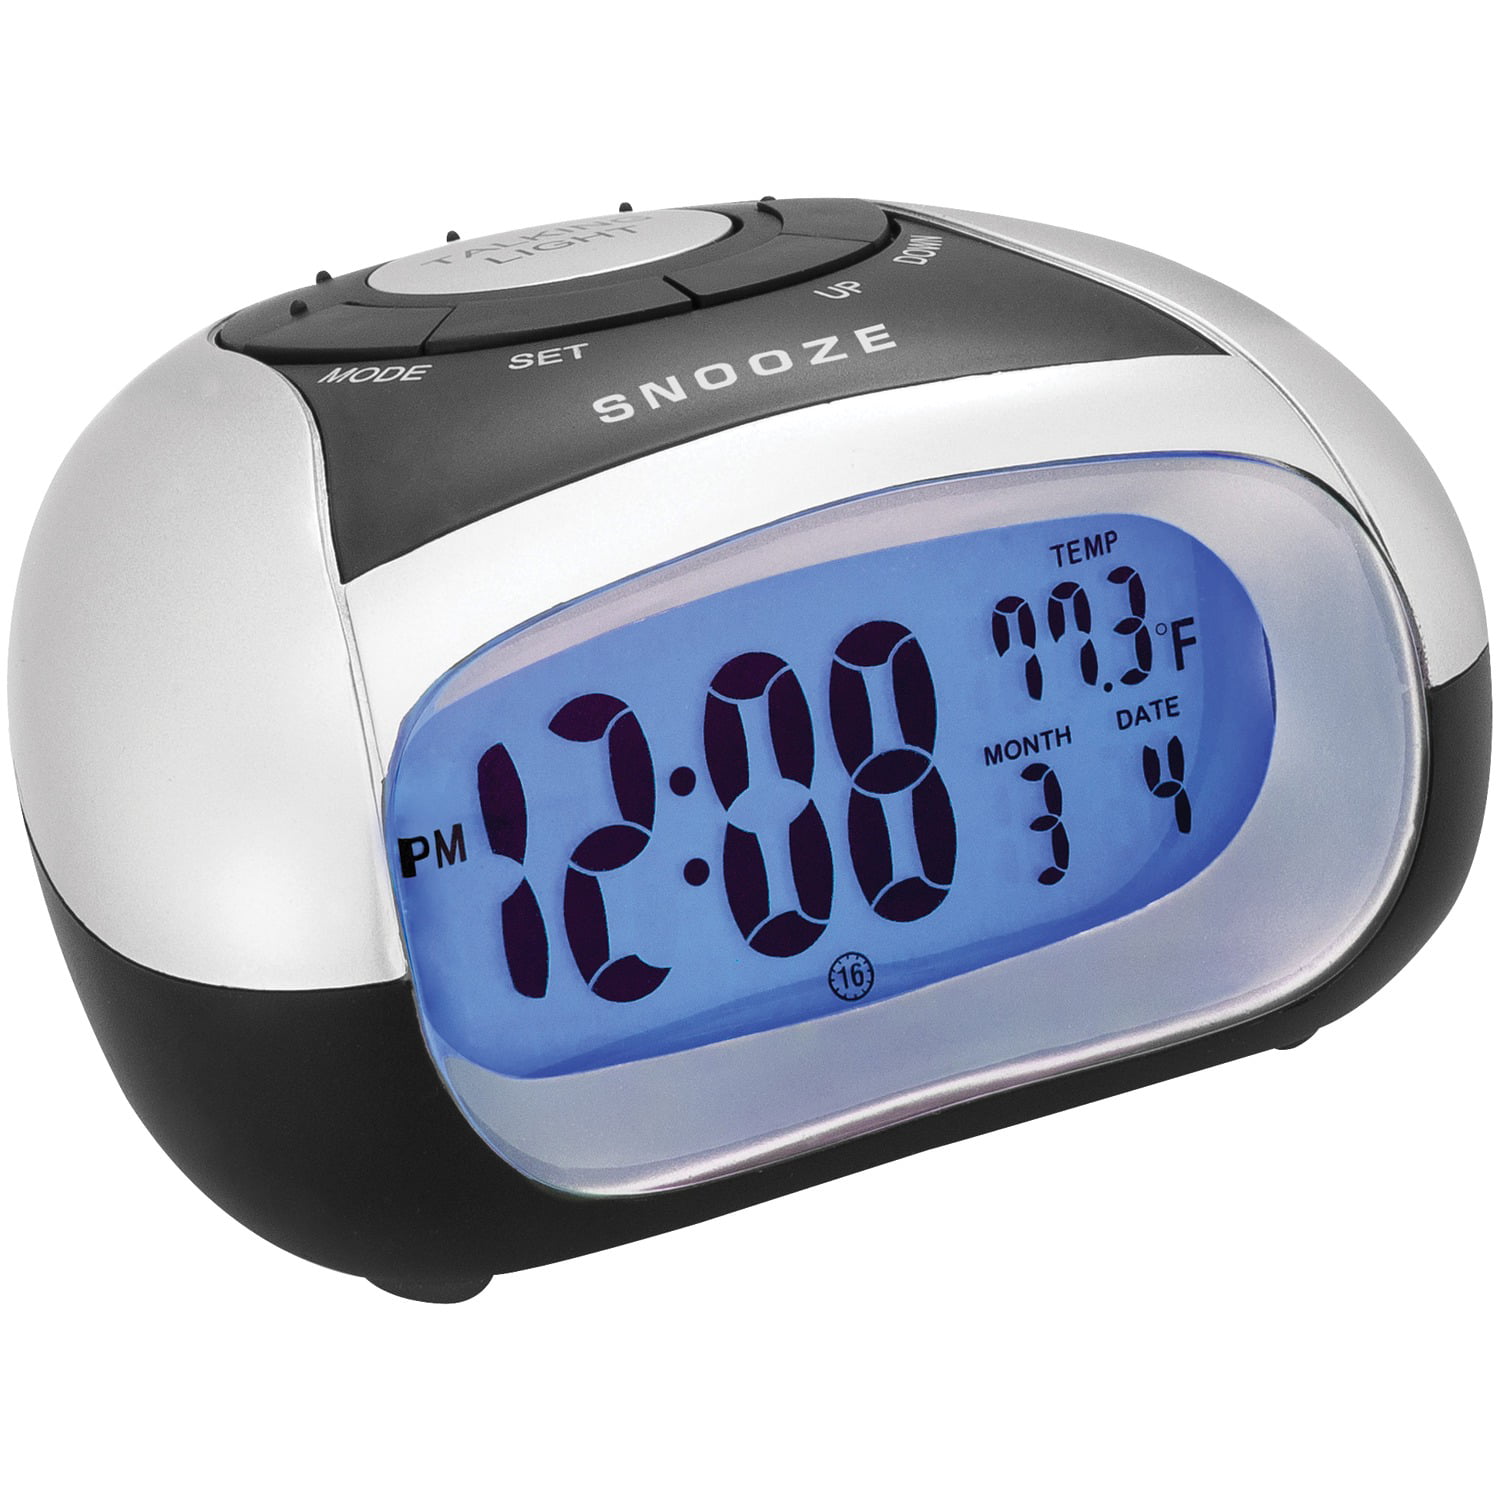 Покажите говорящие часы. Говорящие часы будильник. Digital Alarm Clock. Talking Temp Clock будильник. Часы будильник говорящие Snooze.